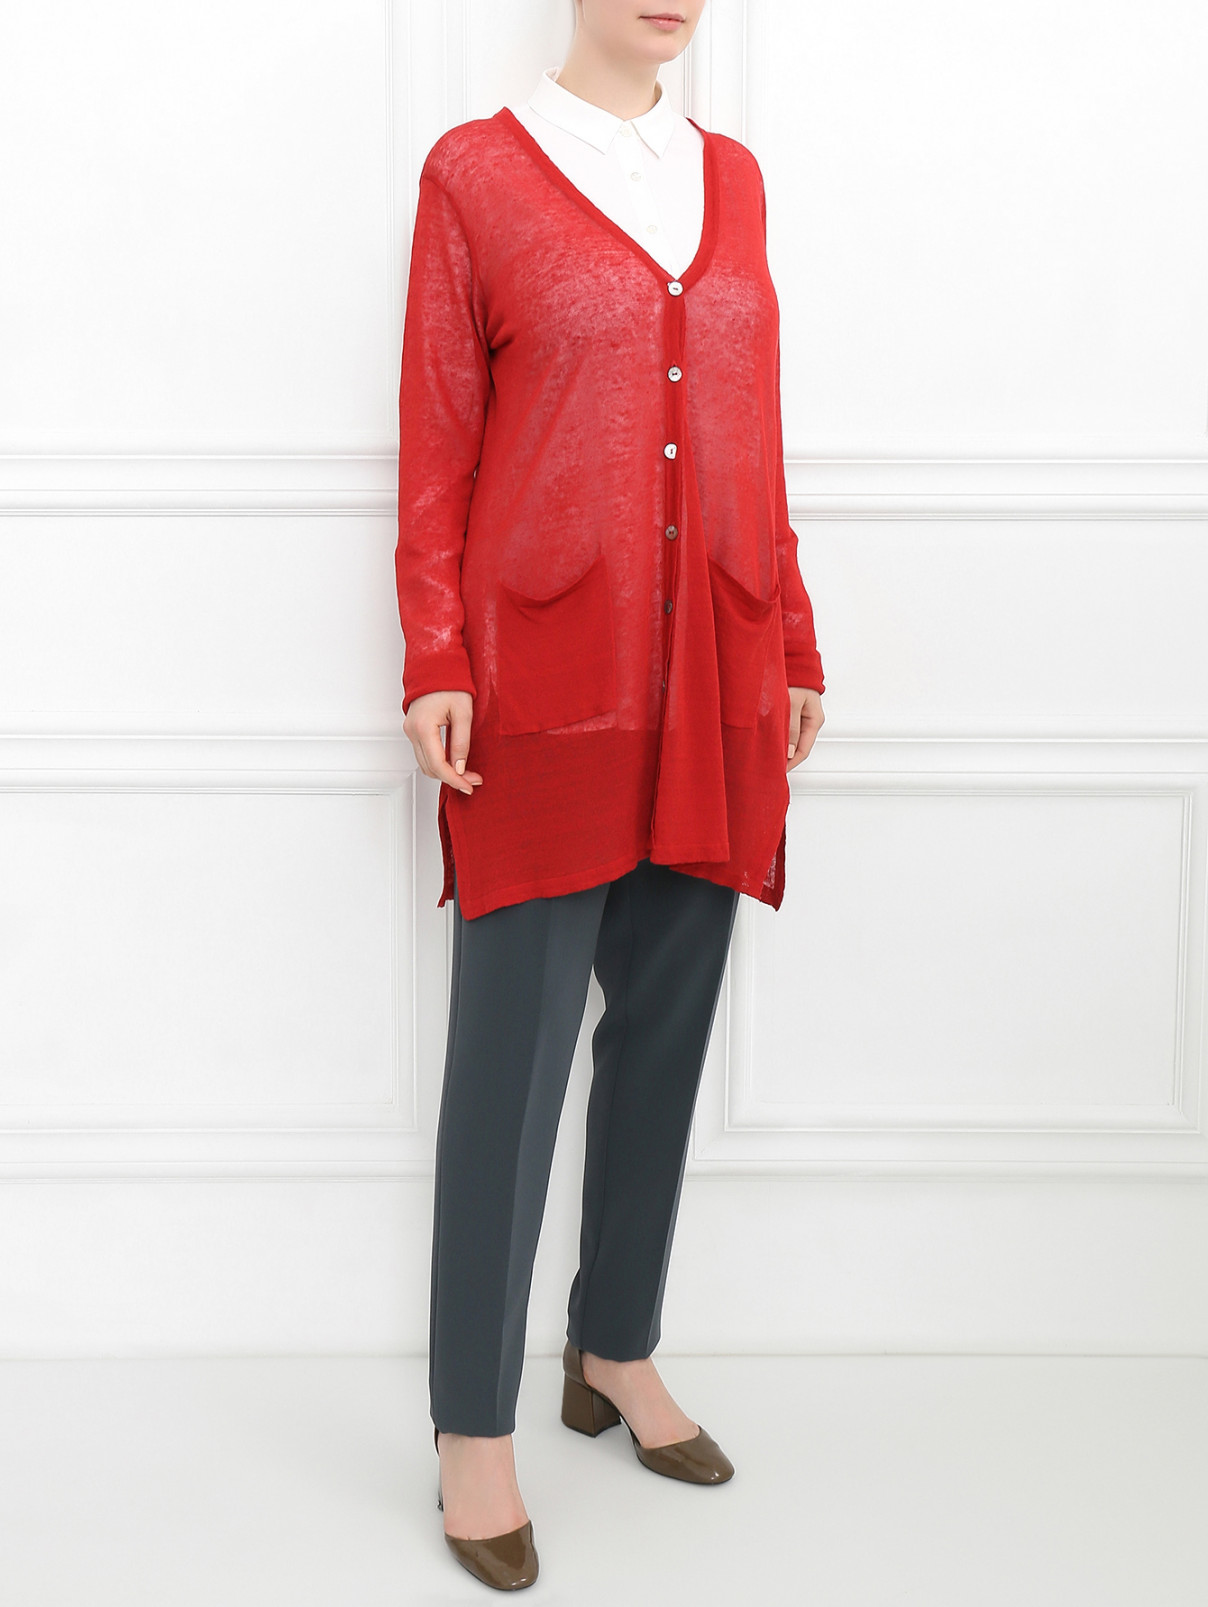 Кардиган с боковыми карманами Marina Rinaldi  –  Модель Общий вид  – Цвет:  Красный